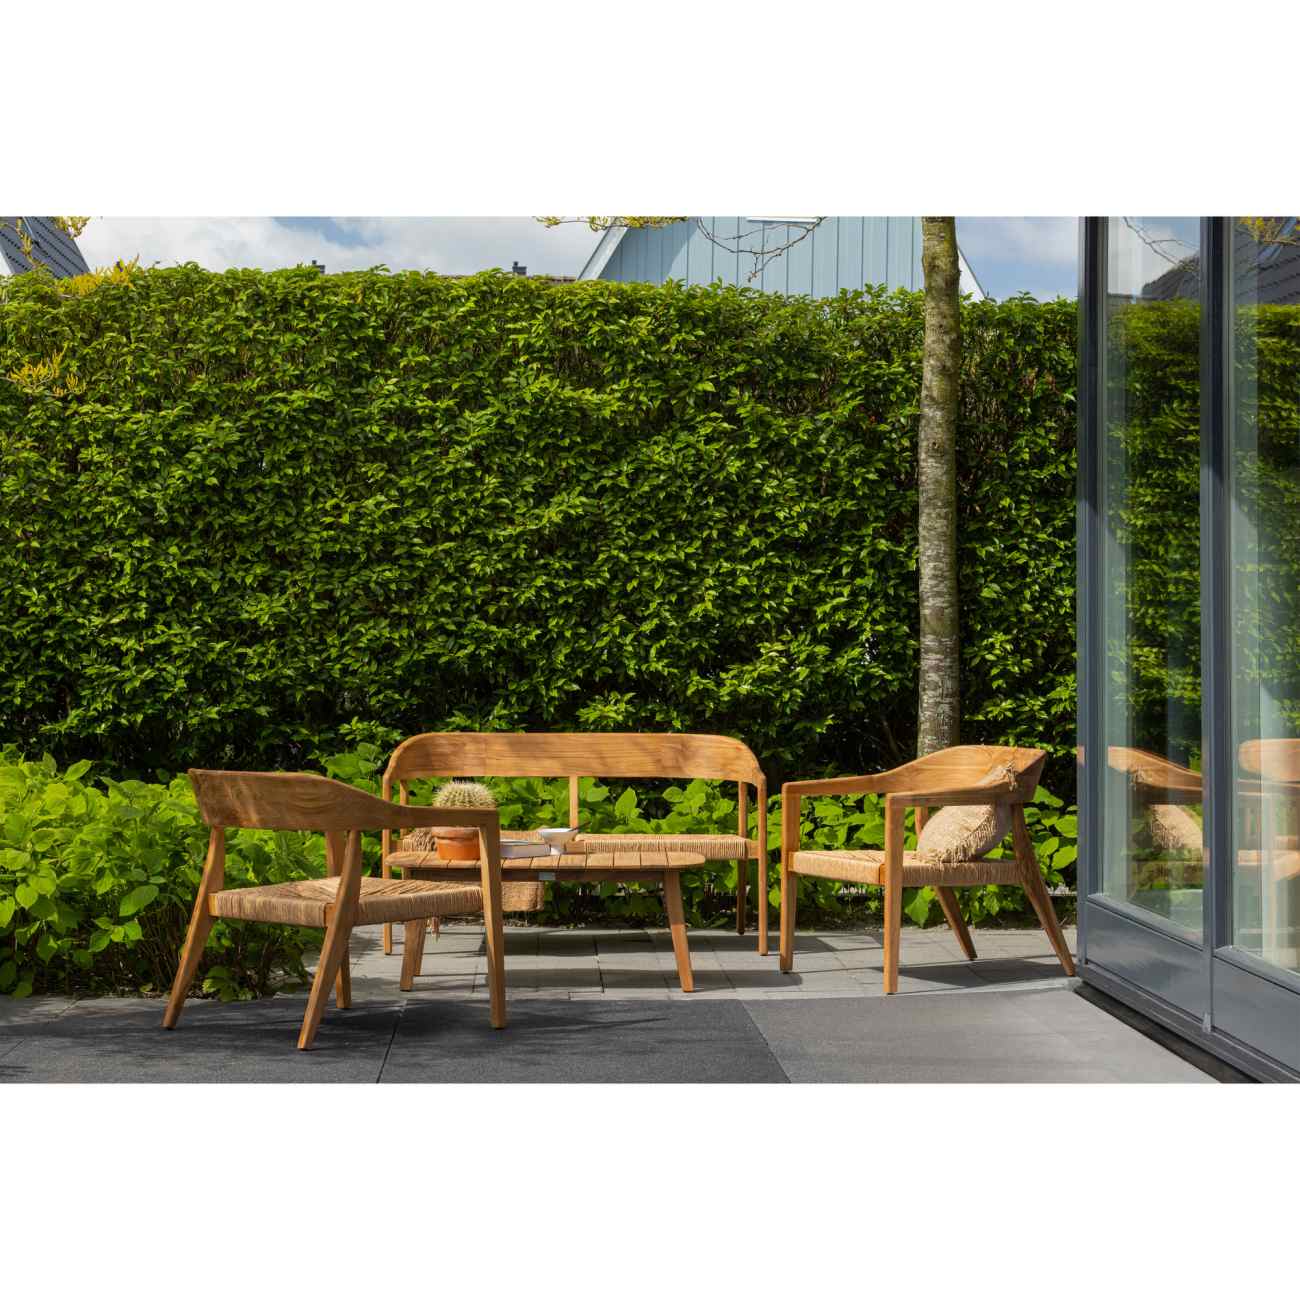 Der Gartensessel Chena überzeugt mit seinem modernen Design. Gefertigt wurde er aus Geflecht, welches einen natürlichen Farbton besitzt. Das Gestell ist aus Teakholz und hat eine natürliche Farbe. Der Sessel besitzt eine Sitzhöhe von 34 cm.